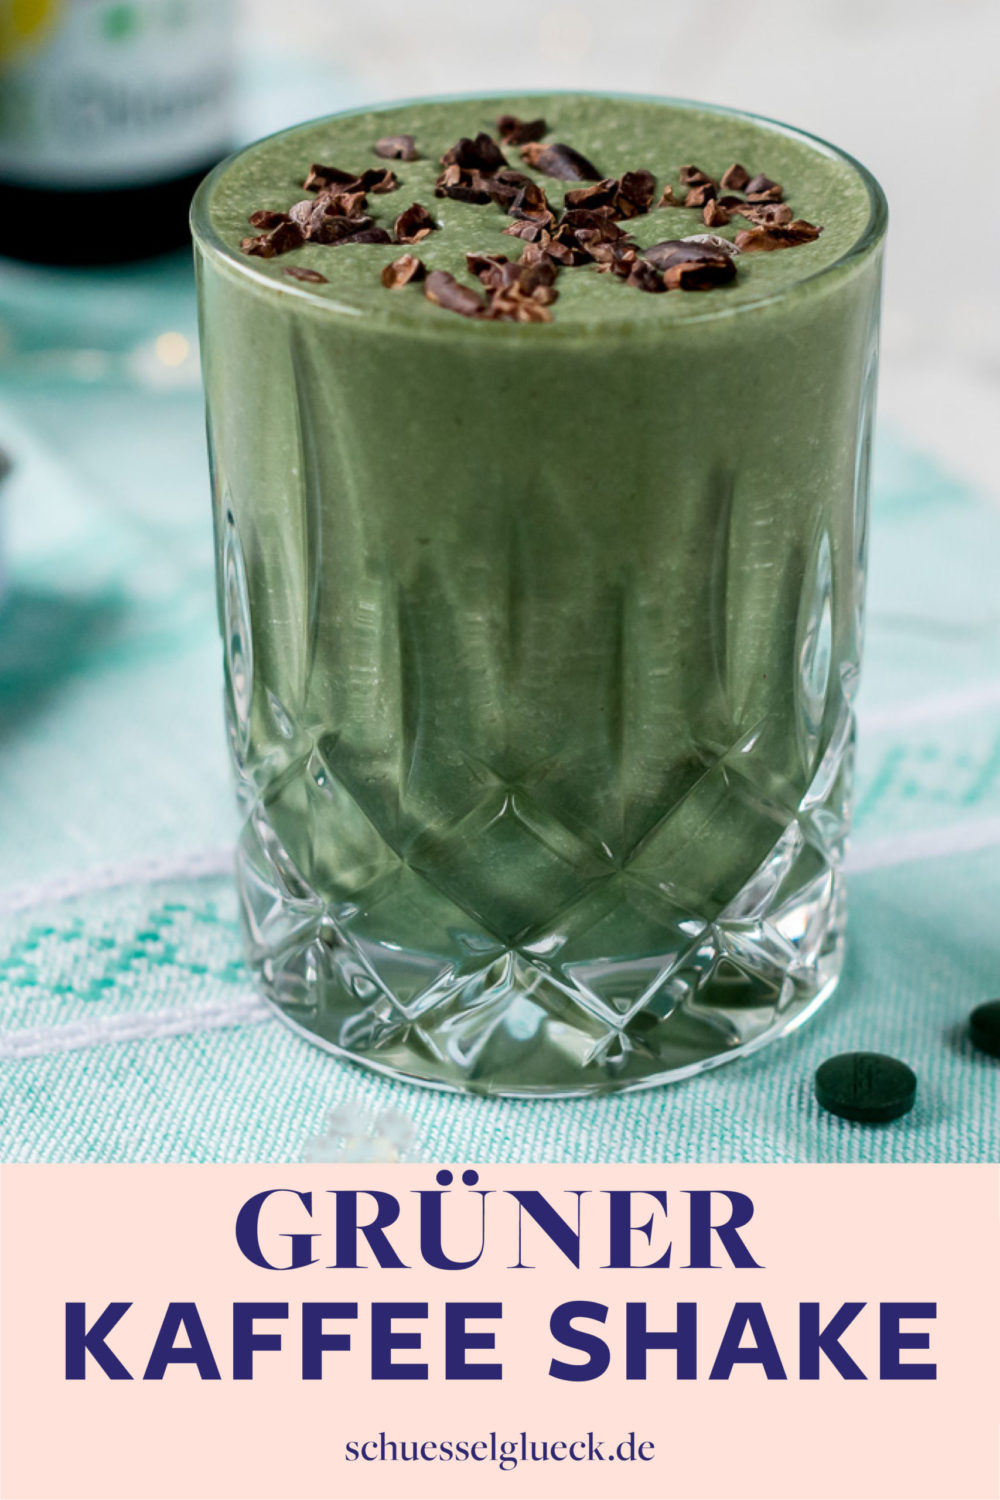 Grüner Kaffee Shake mit Chlorella & Spirulina + alles was Du über das Superfood aus dem Wasser wissen musst